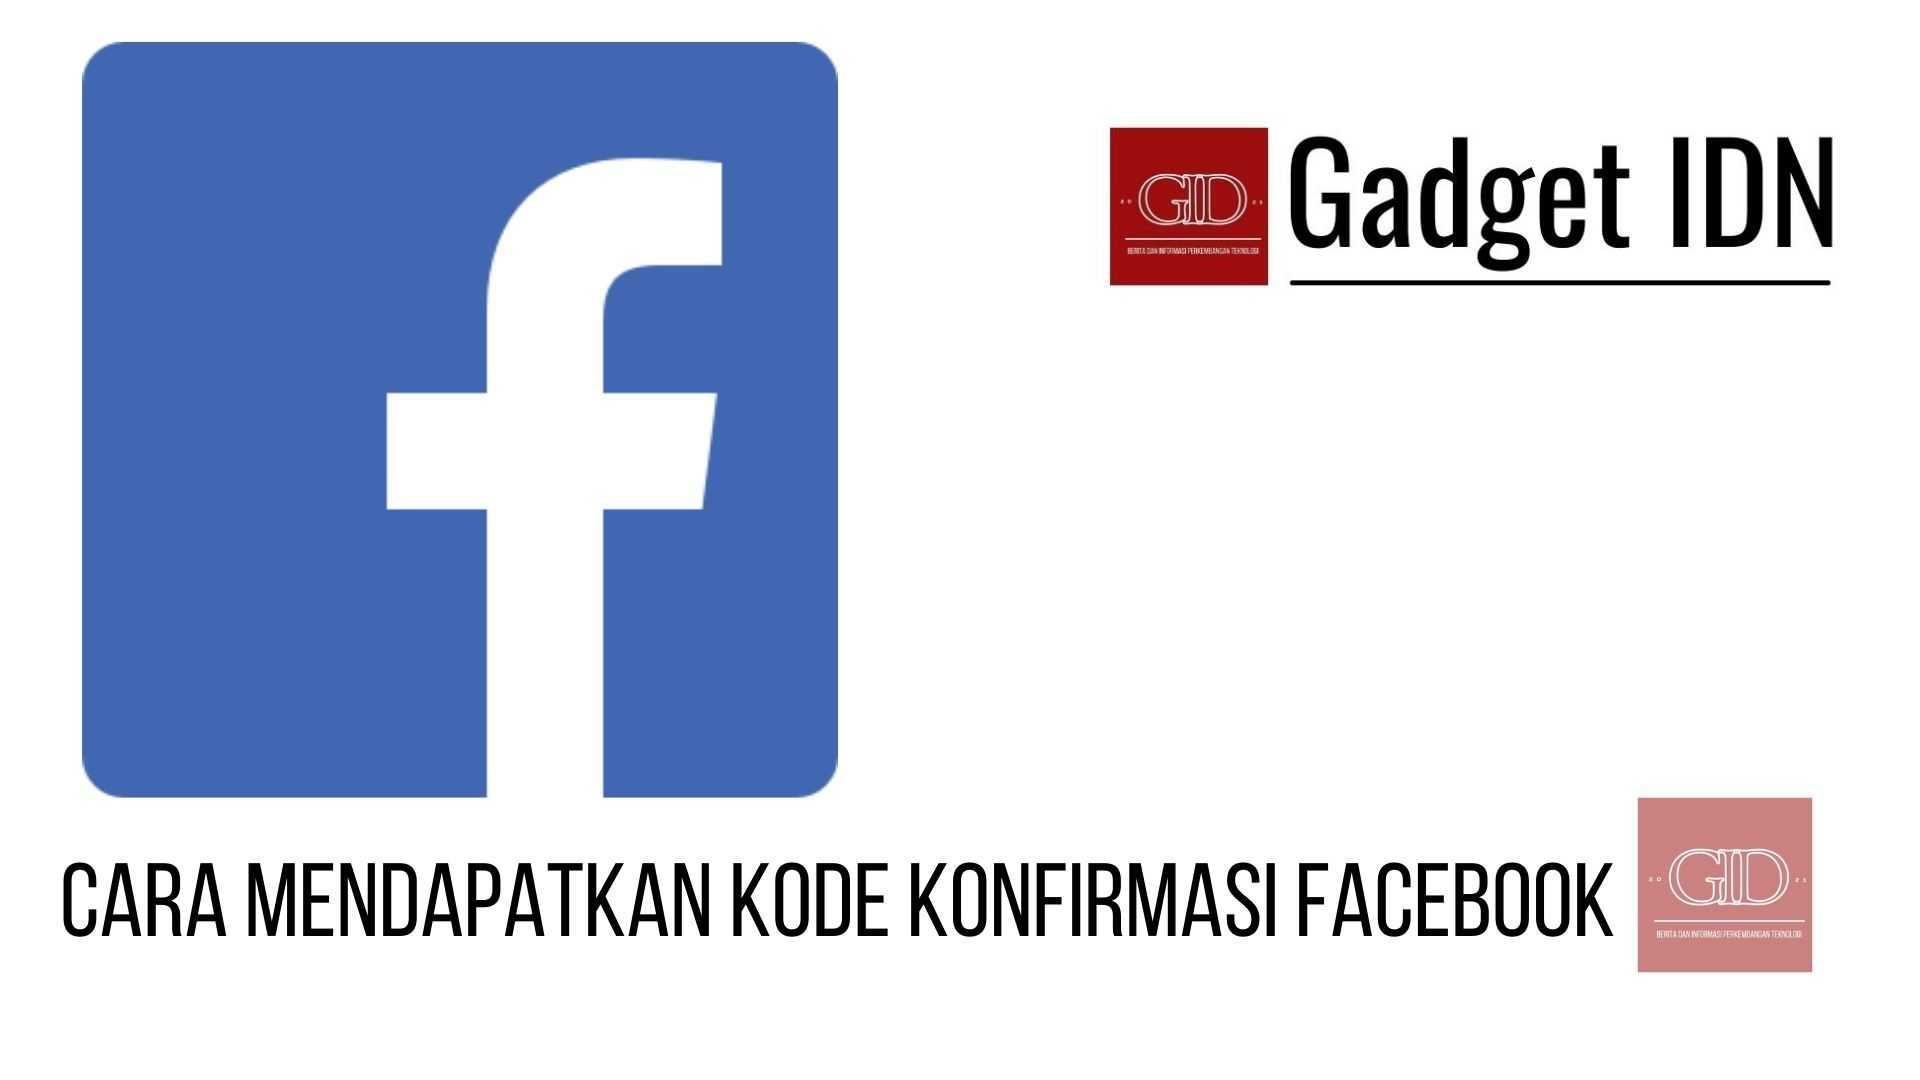 Cara Mendapat Kode Konfirmasi Facebook Terbaru | GADGET IDN